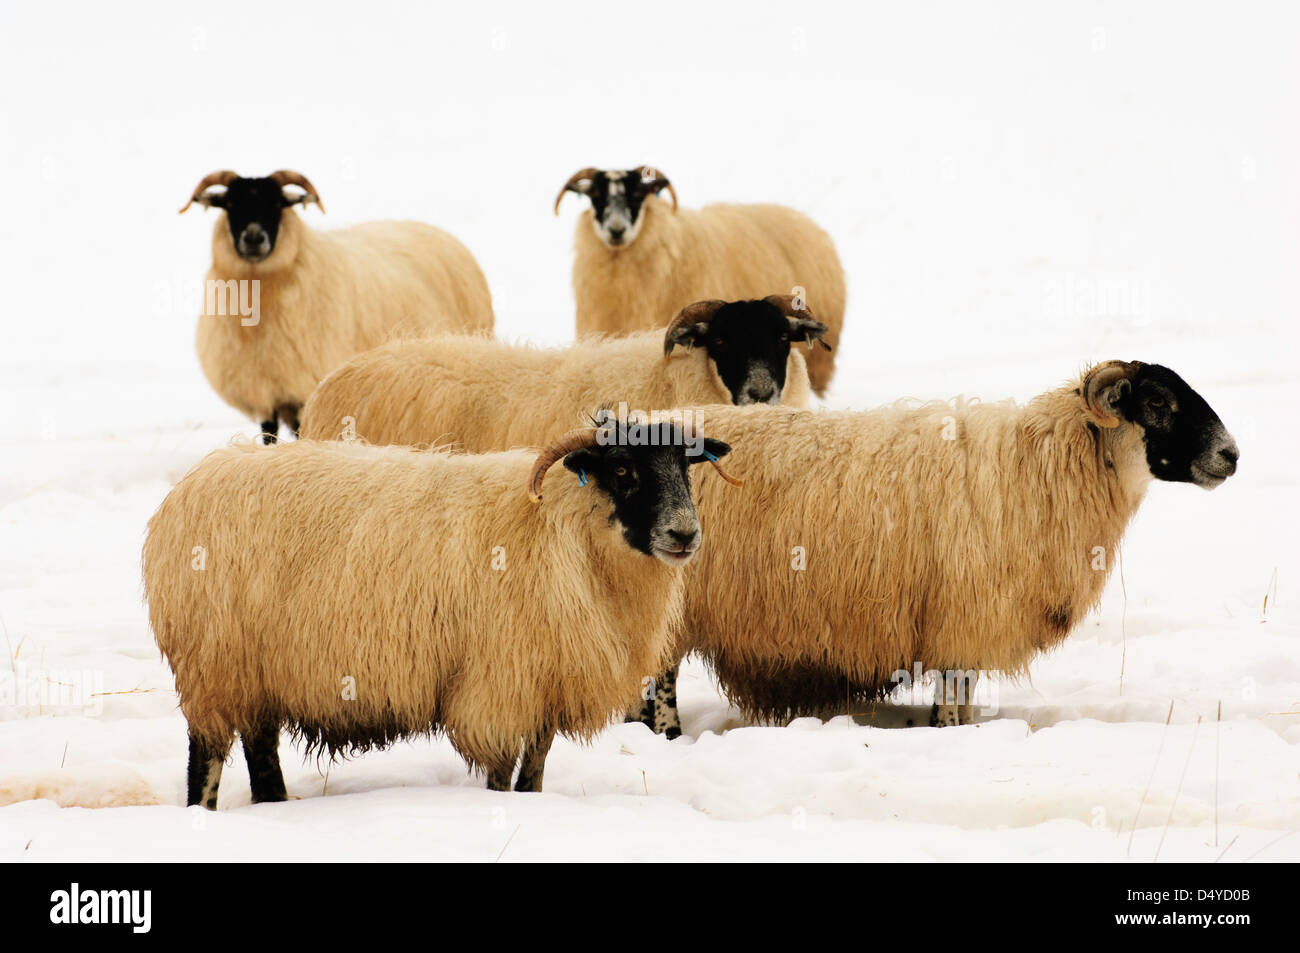 Gruppe von Schafen (Mutterschafe) im Schnee, mit Blizzard, die hinter ihnen stehen. Stockfoto